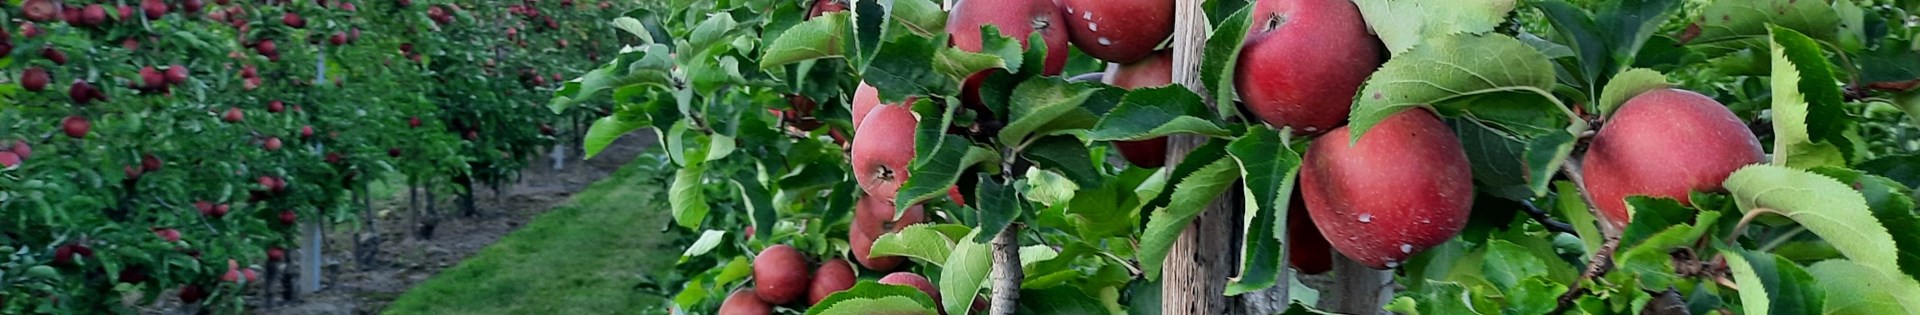 Appels_appelboom_fruitbomen